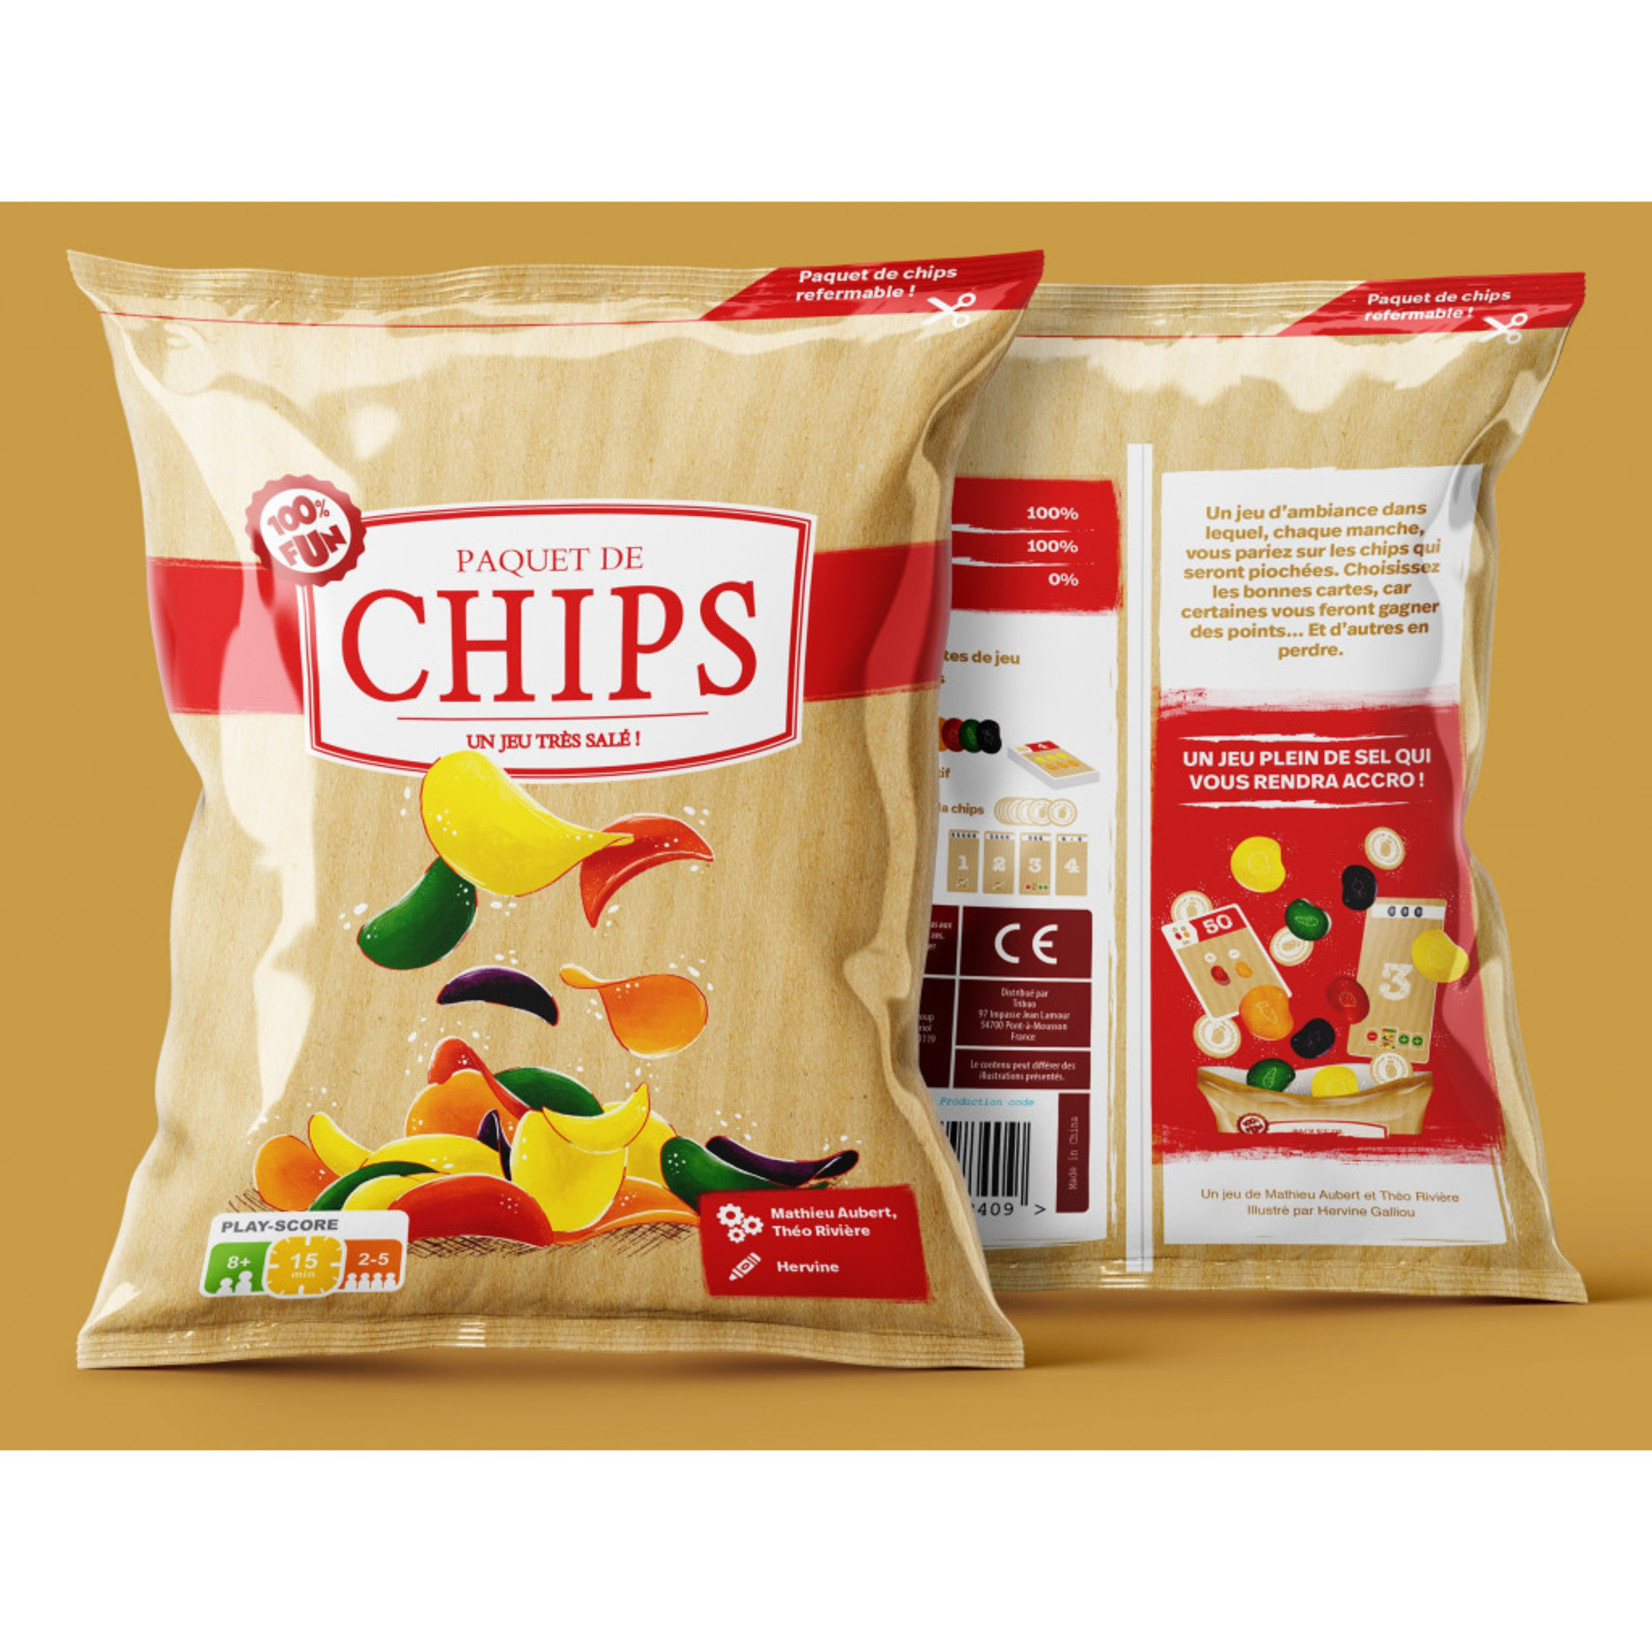 Paquet de Chips - Atelier du Jeu